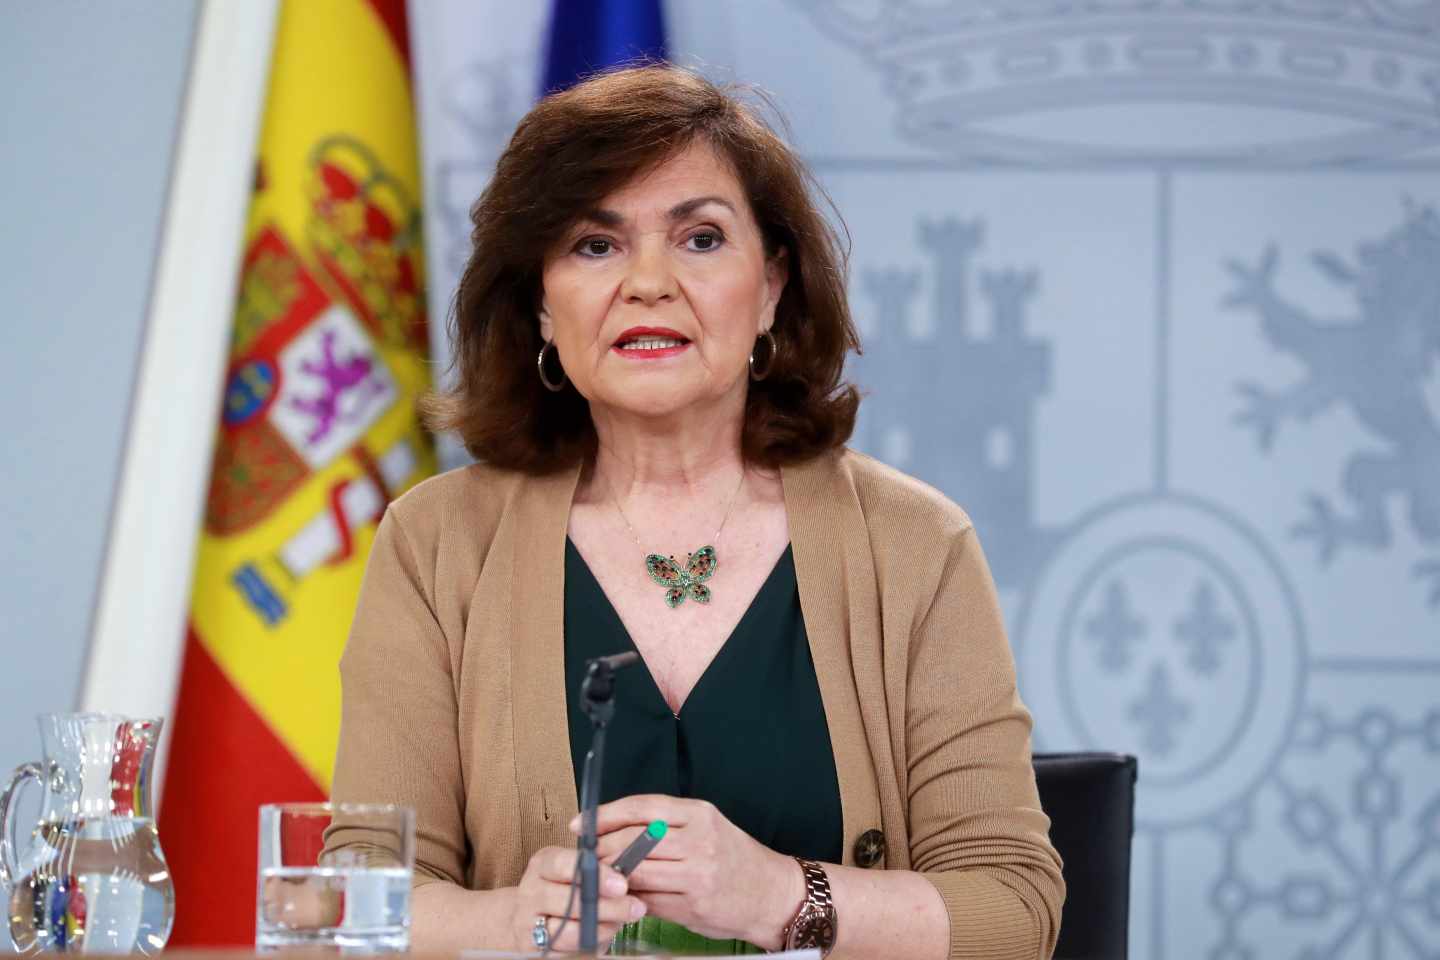 El Gobierno nombra tres delegados para sustituir a los que irán en las listas del PSOE